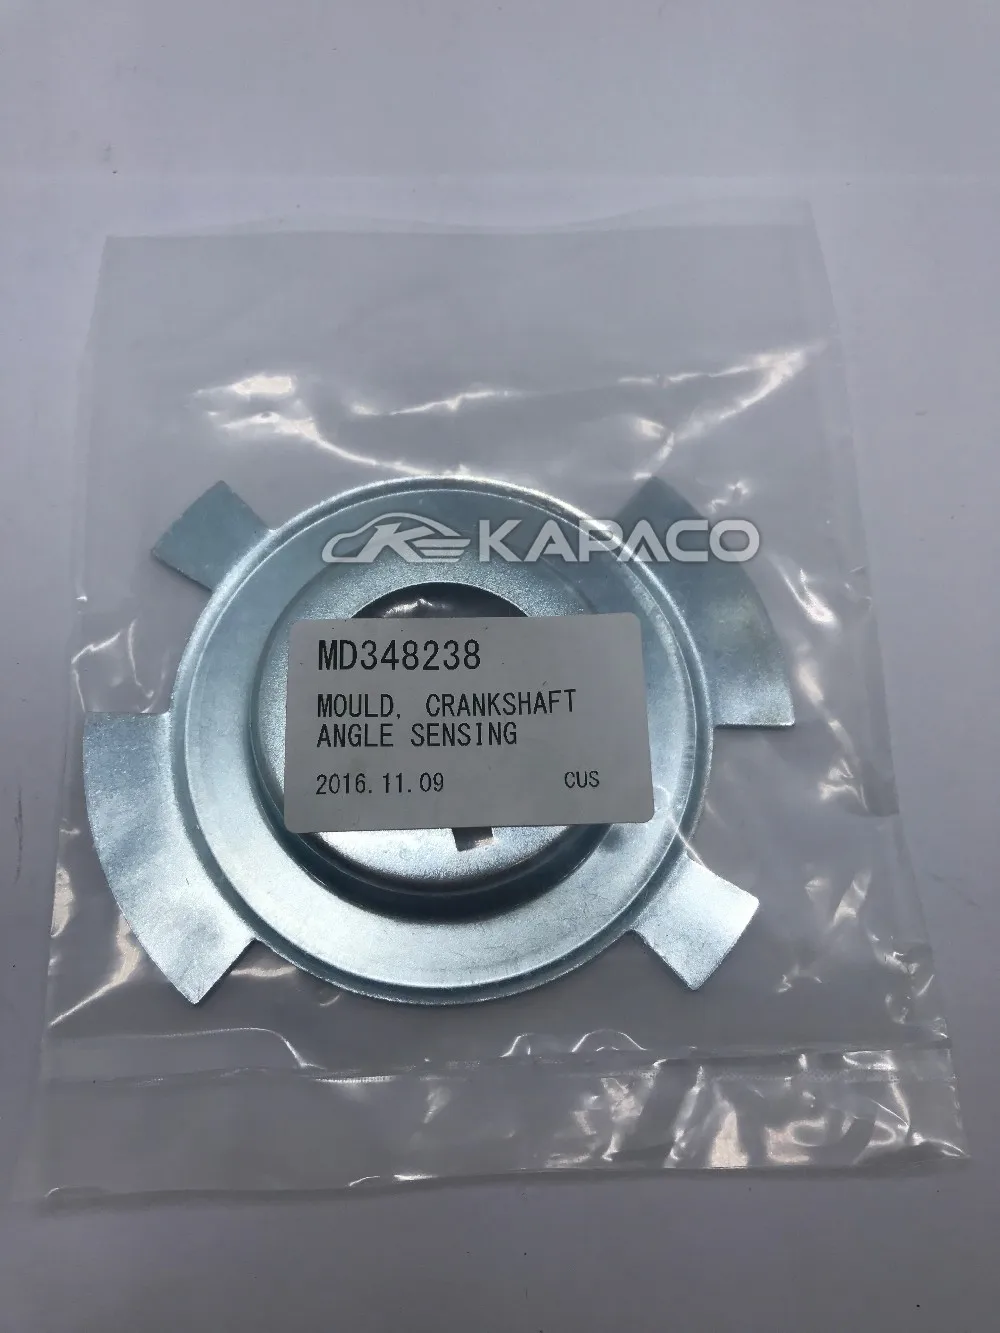 KAPACO автозапчасти кривошипный Датчик положения коленчатого вала для Mitsubishi Pajero Montero пикап L200 датчик угла коленчатого вала MD348238